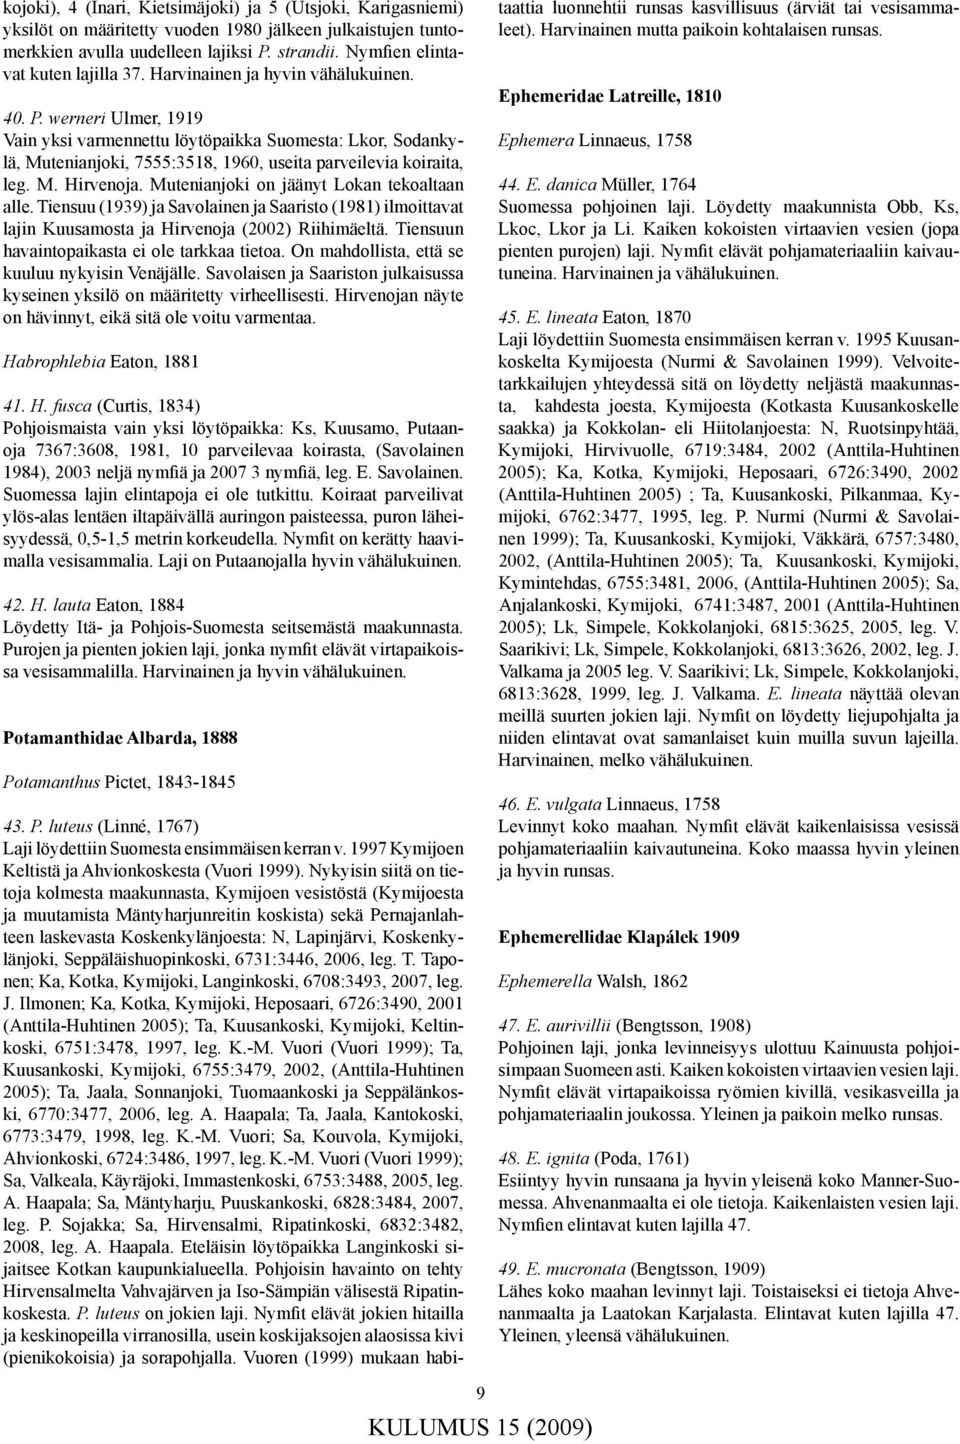 werneri Ulmer, 1919 Vain yksi varmennettu löytöpaikka Suomesta: Lkor, Sodankylä, Mutenianjoki, 7555:3518, 1960, useita parveilevia koiraita, leg. M. Hirvenoja.